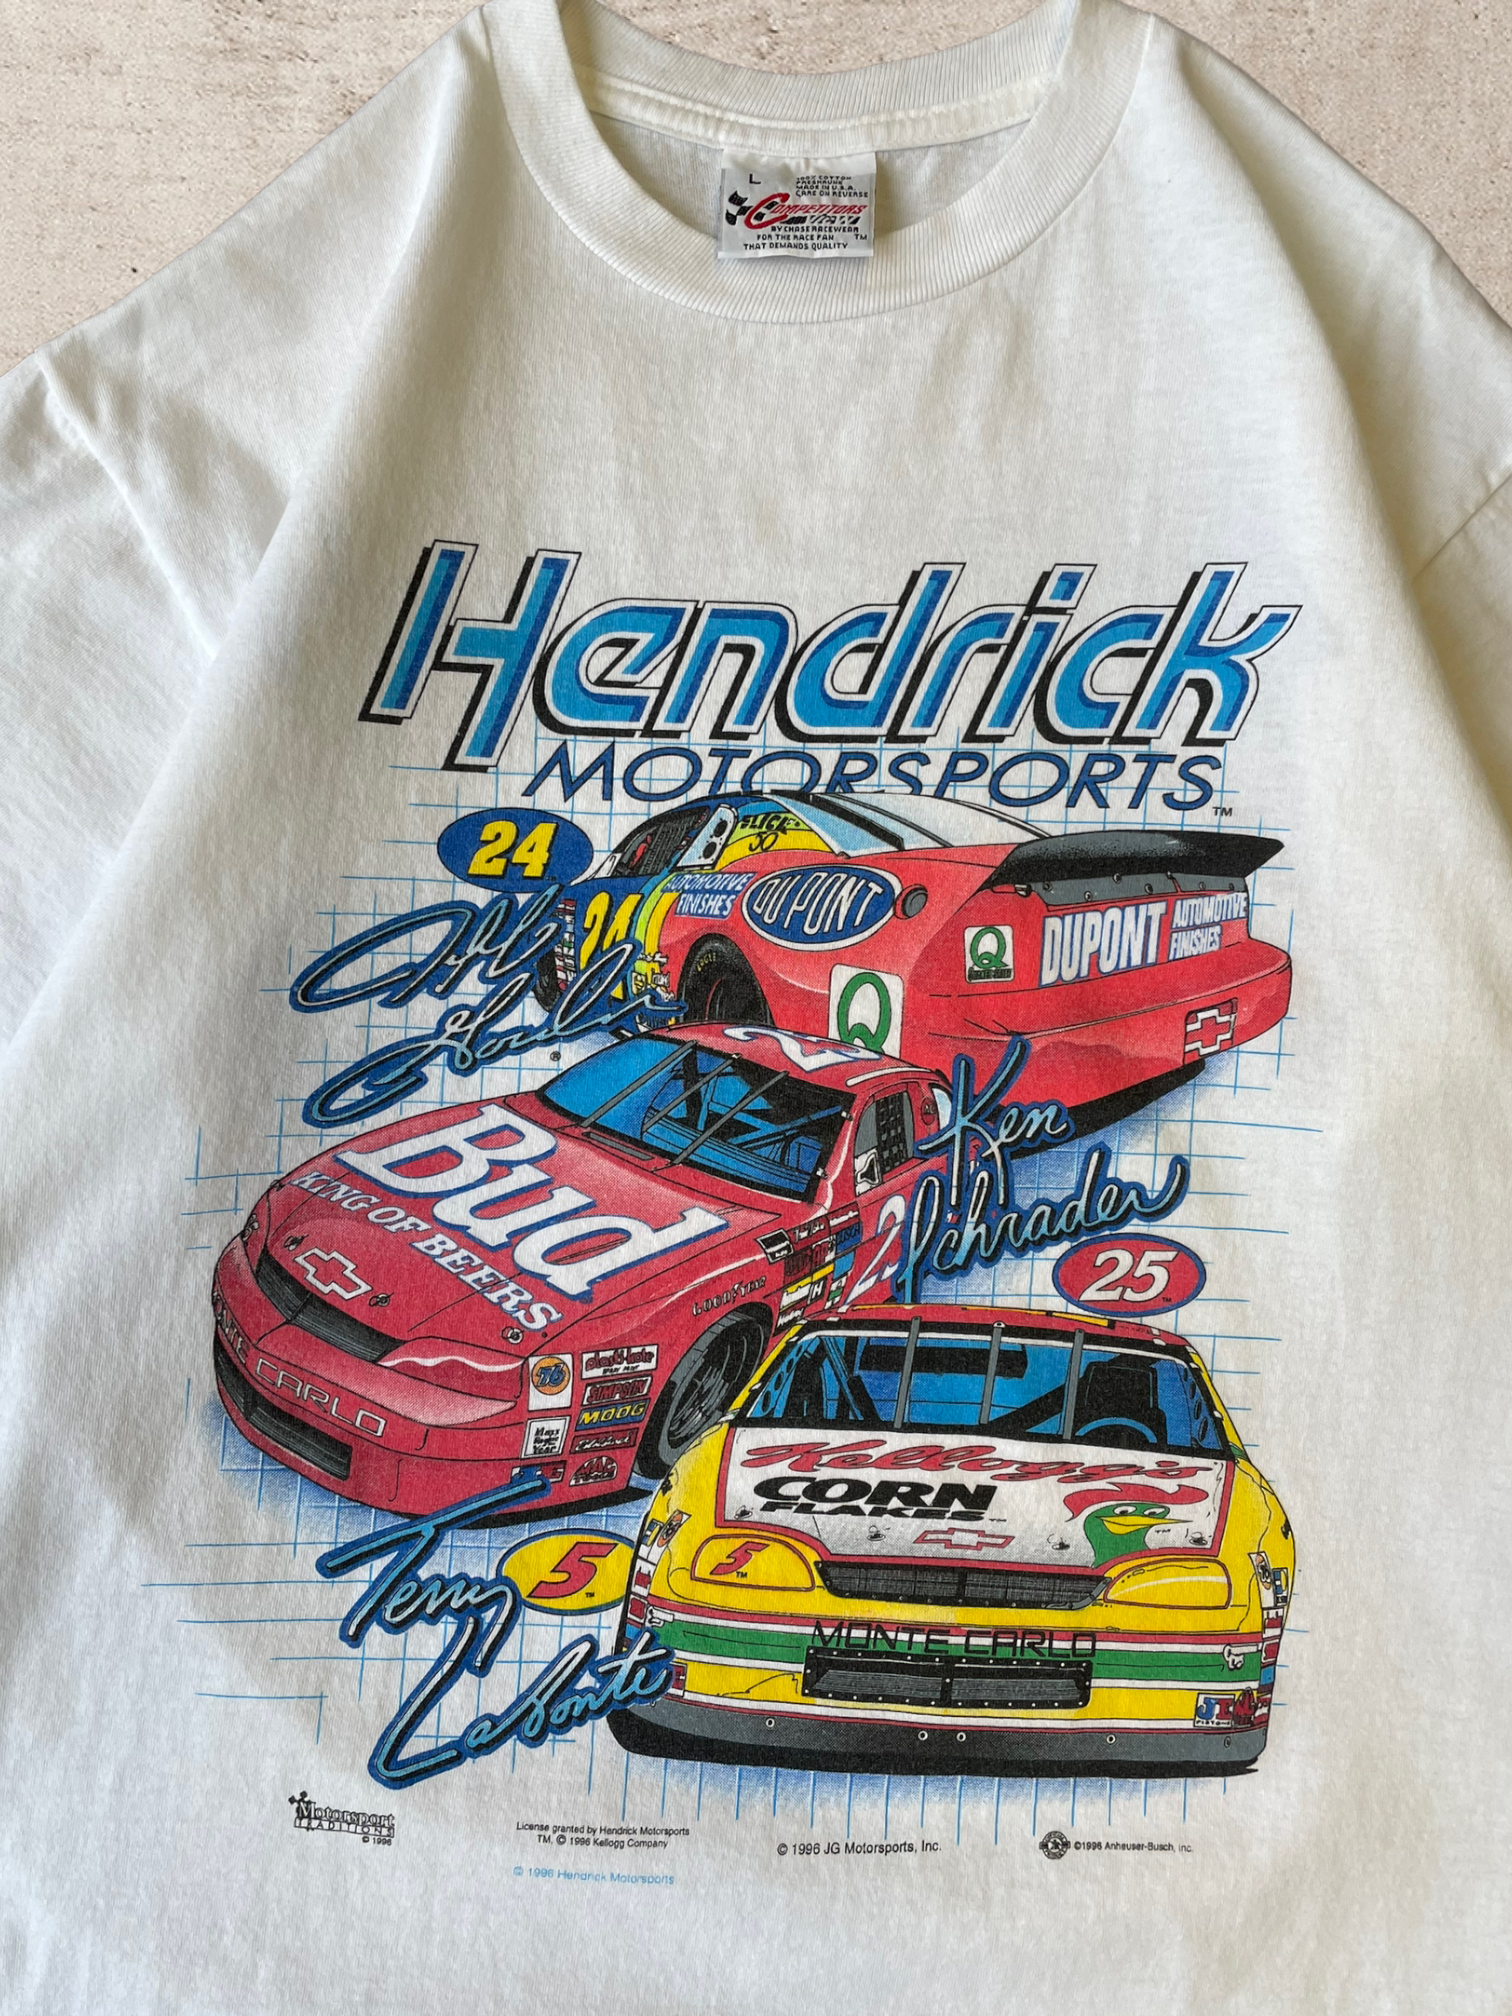 1996 ヘンドリック モータースポーツ レーシング T シャツ - L